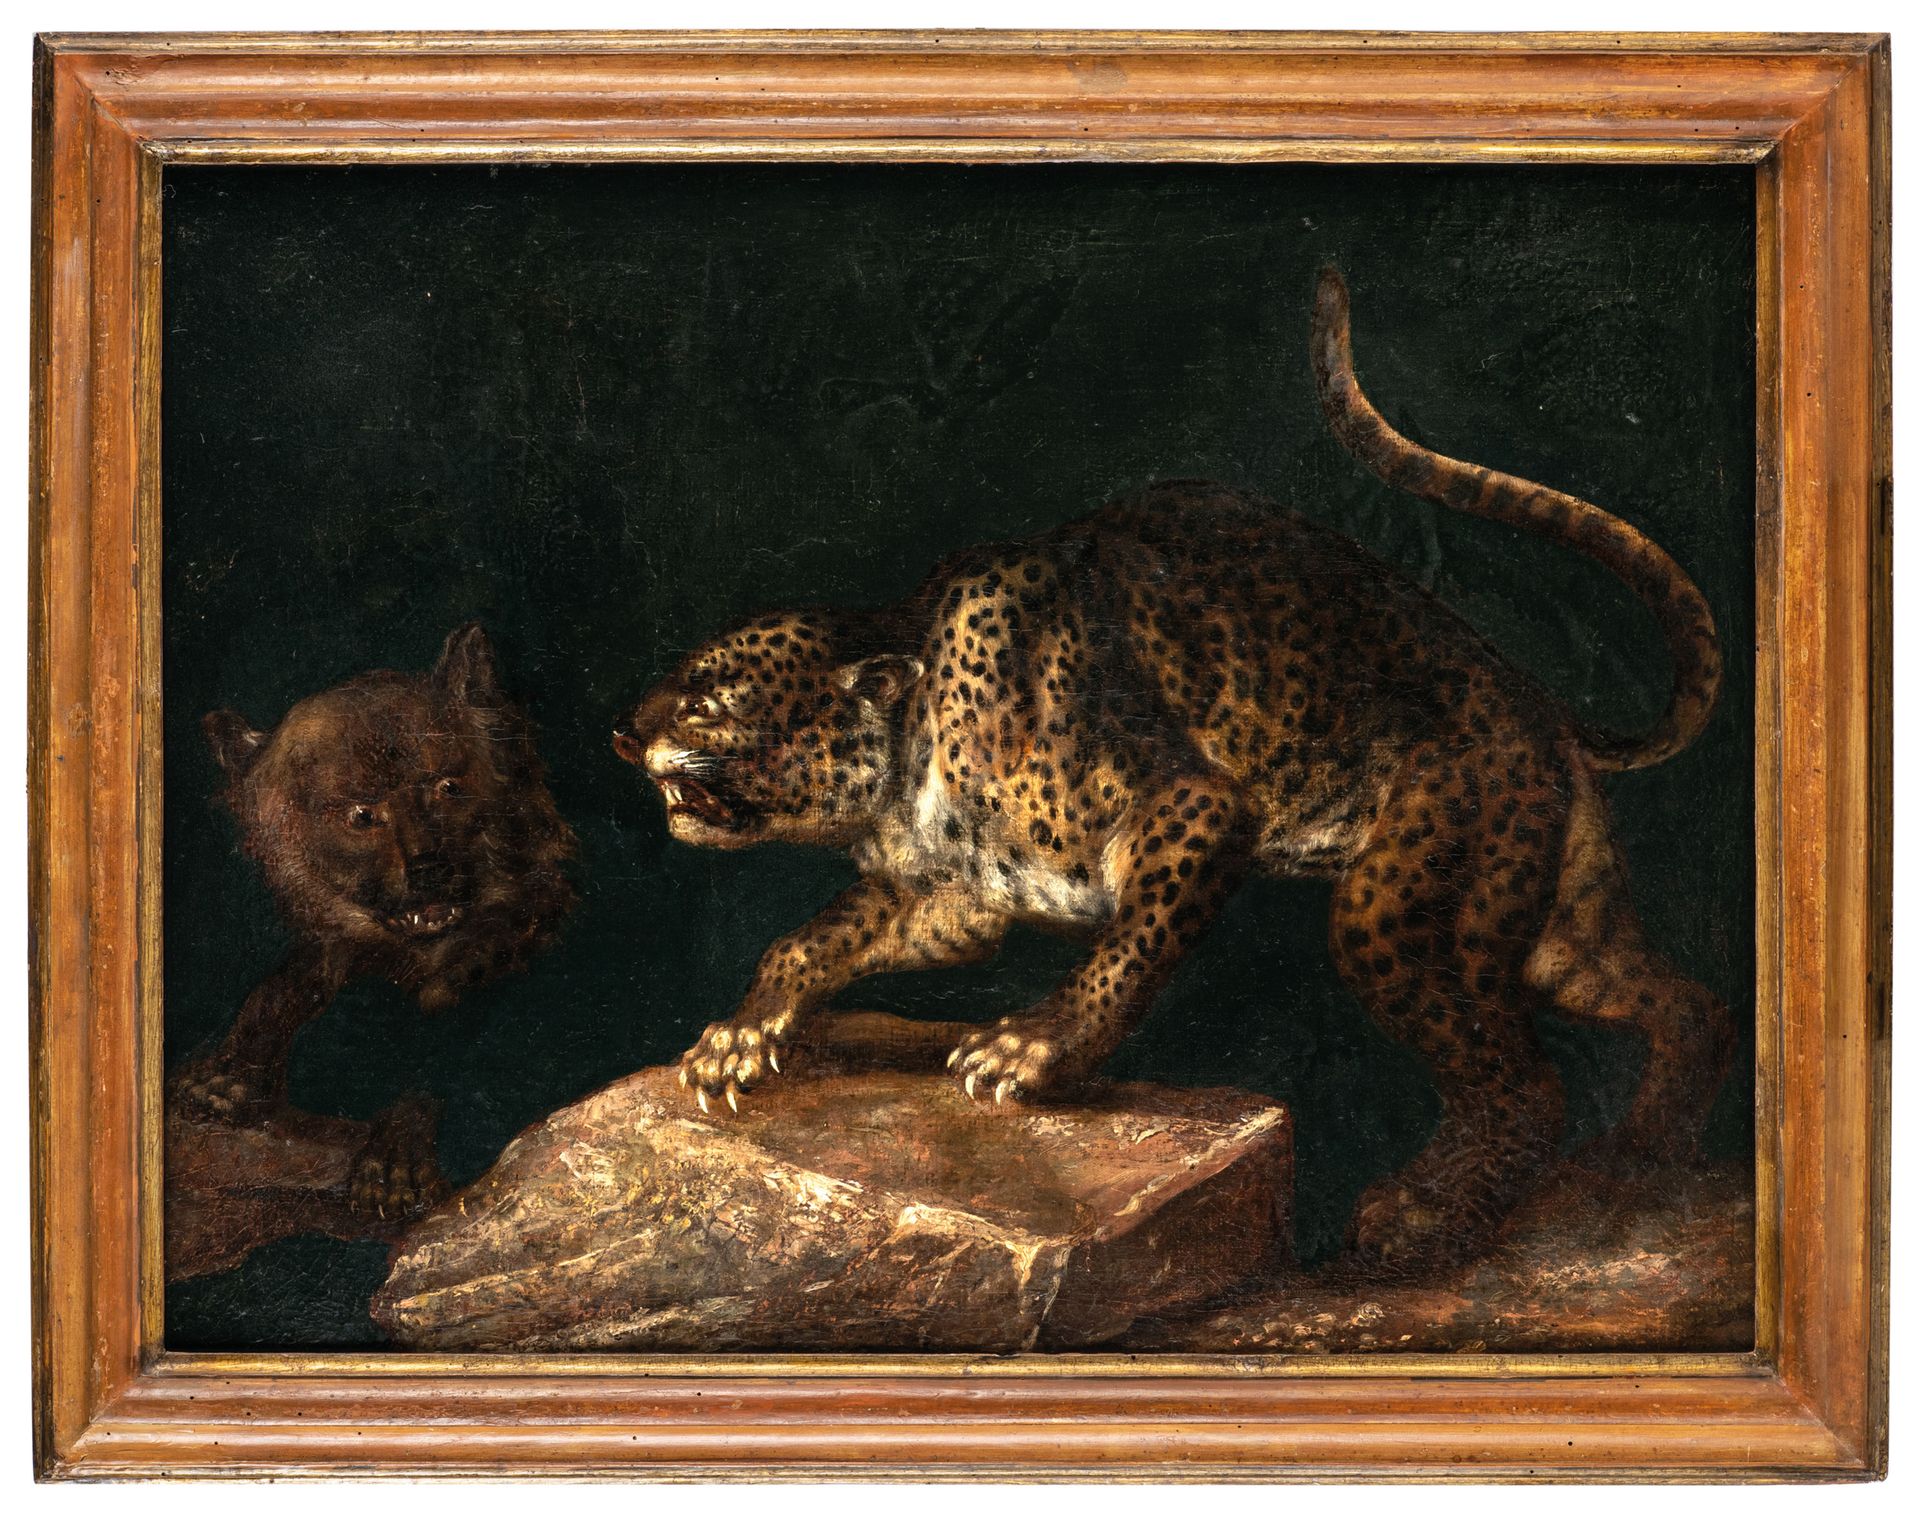 PITTORE DEL XVIII-XIX SECOLO 动物
布面油画，cm 55X73